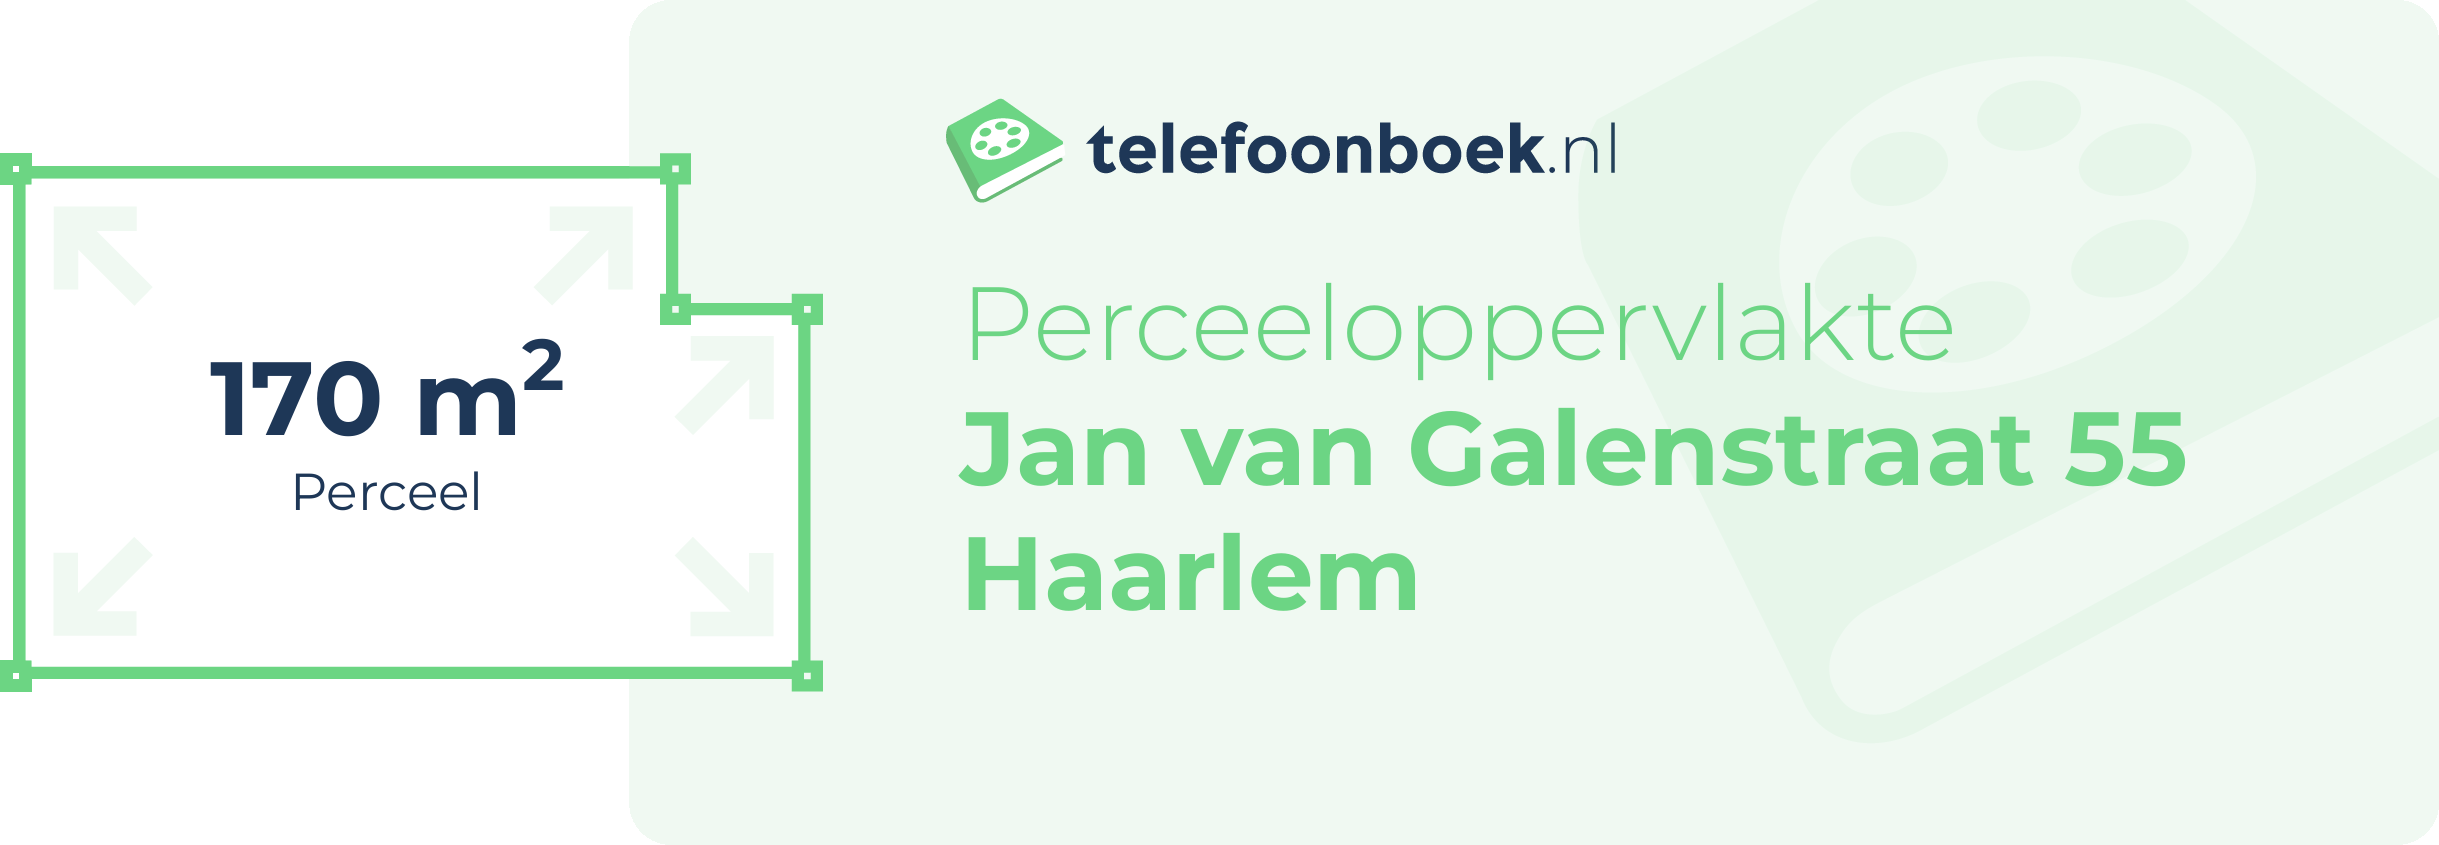 Perceeloppervlakte Jan Van Galenstraat 55 Haarlem